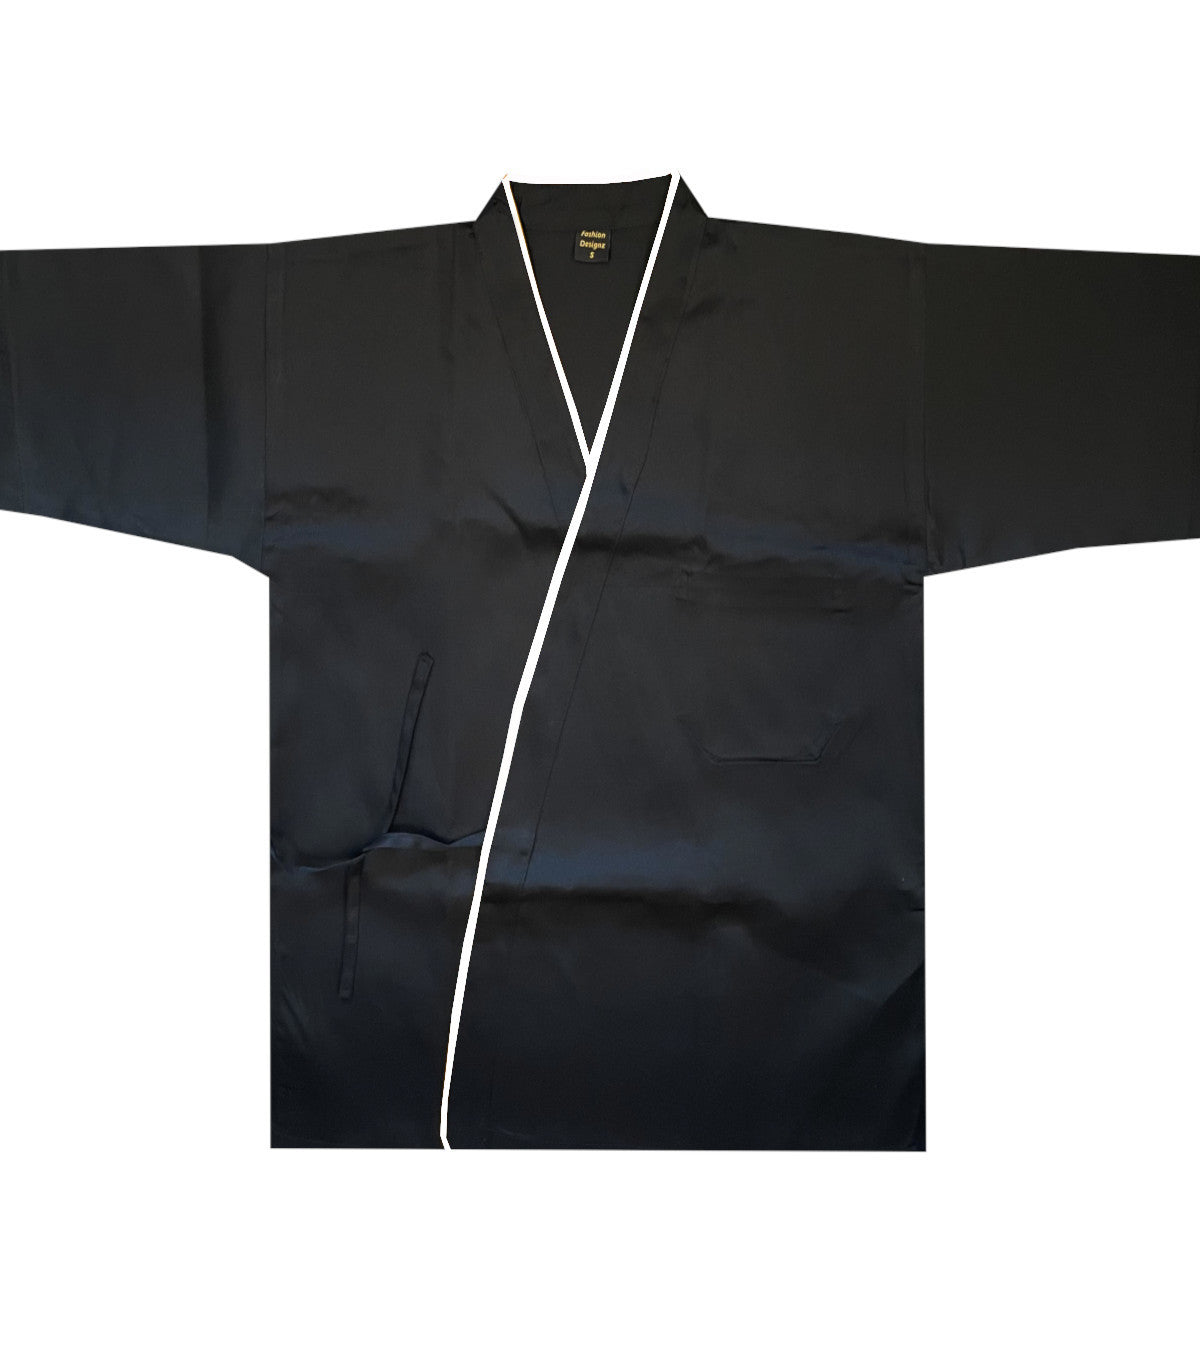 black and white sushi chef coat, sushi chef uniform, sushi chef coat